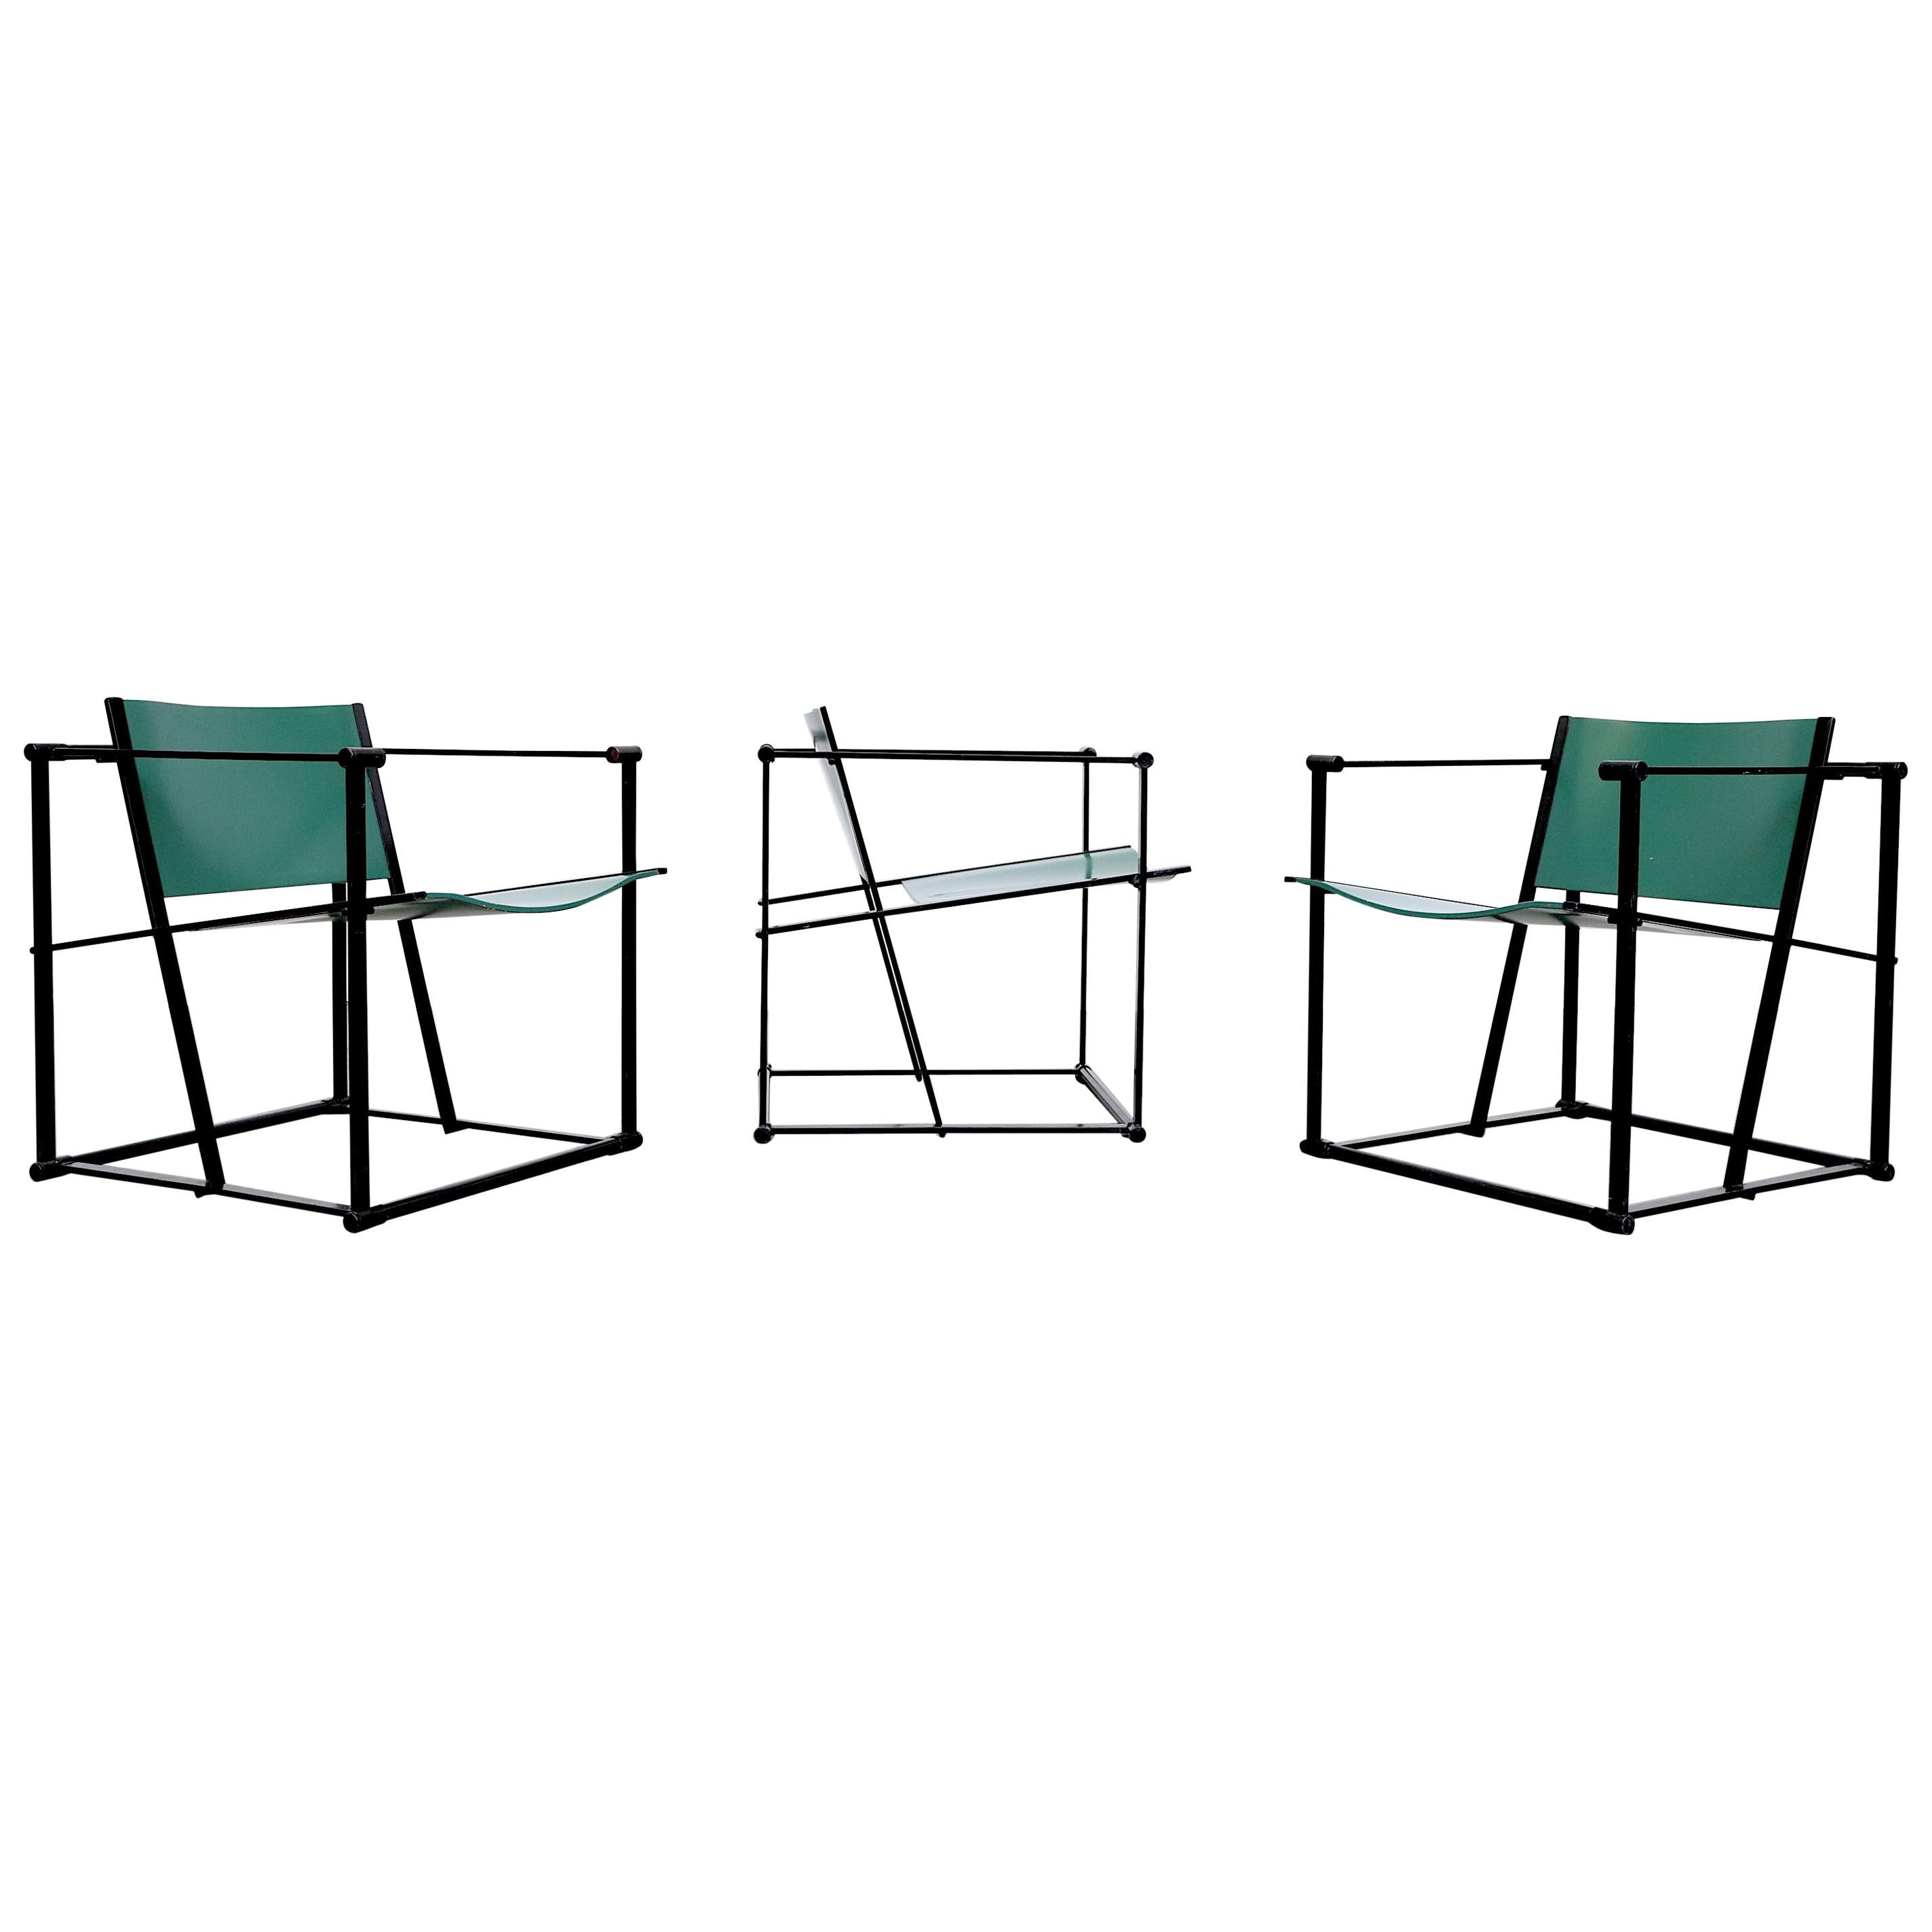 Emerald Green Cube Chairs by Radboud Van Beekum for Pastoe